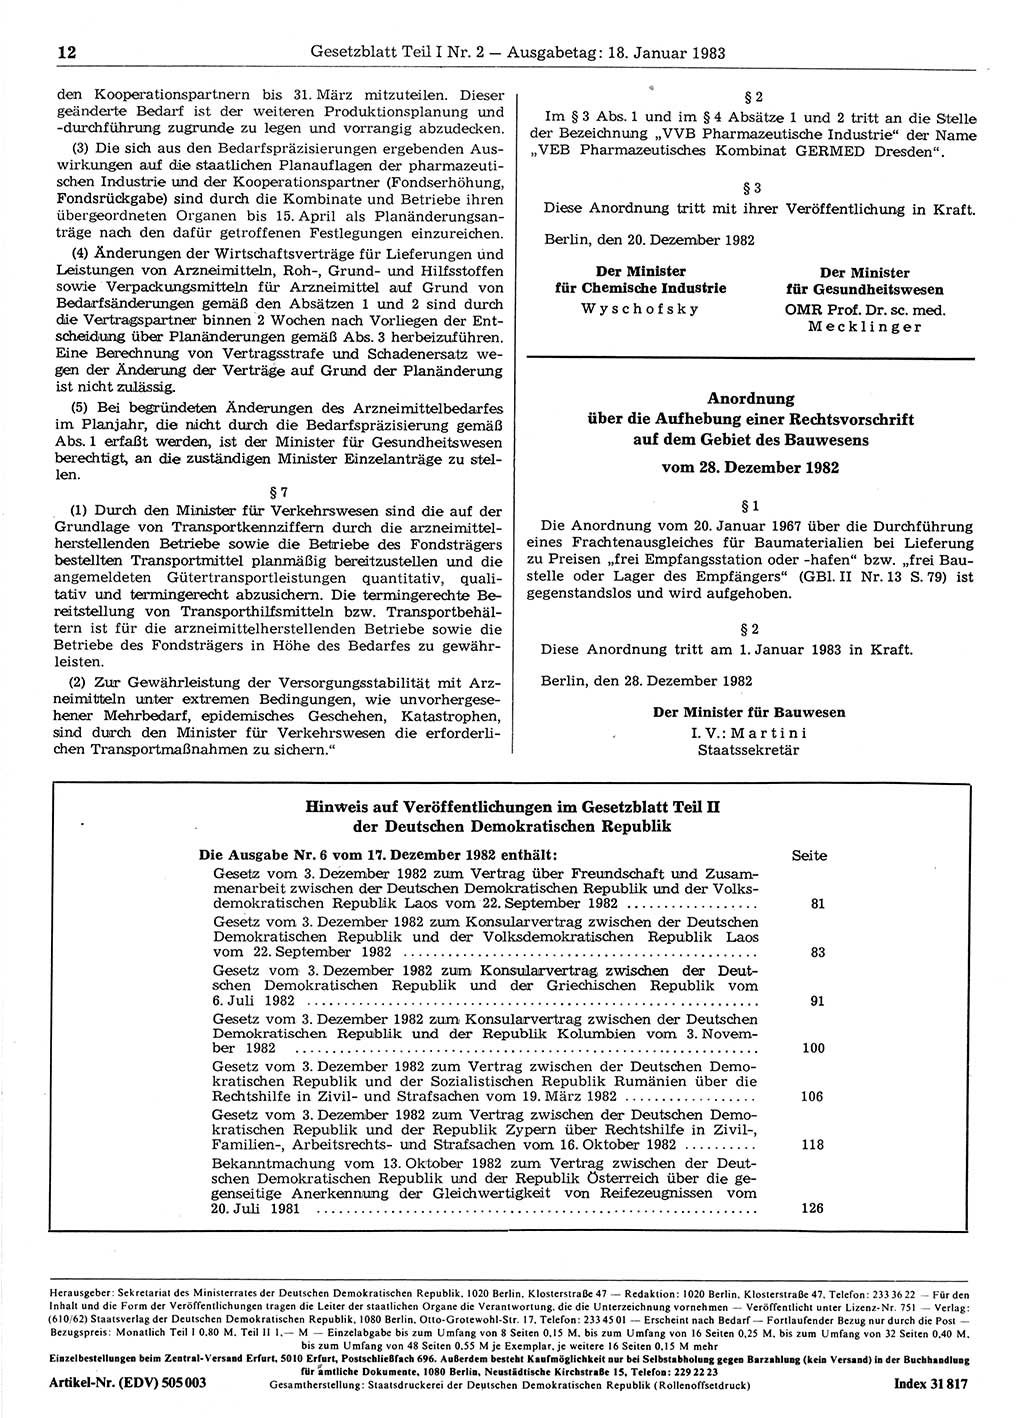 Gesetzblatt (GBl.) der Deutschen Demokratischen Republik (DDR) Teil Ⅰ 1983, Seite 12 (GBl. DDR Ⅰ 1983, S. 12)